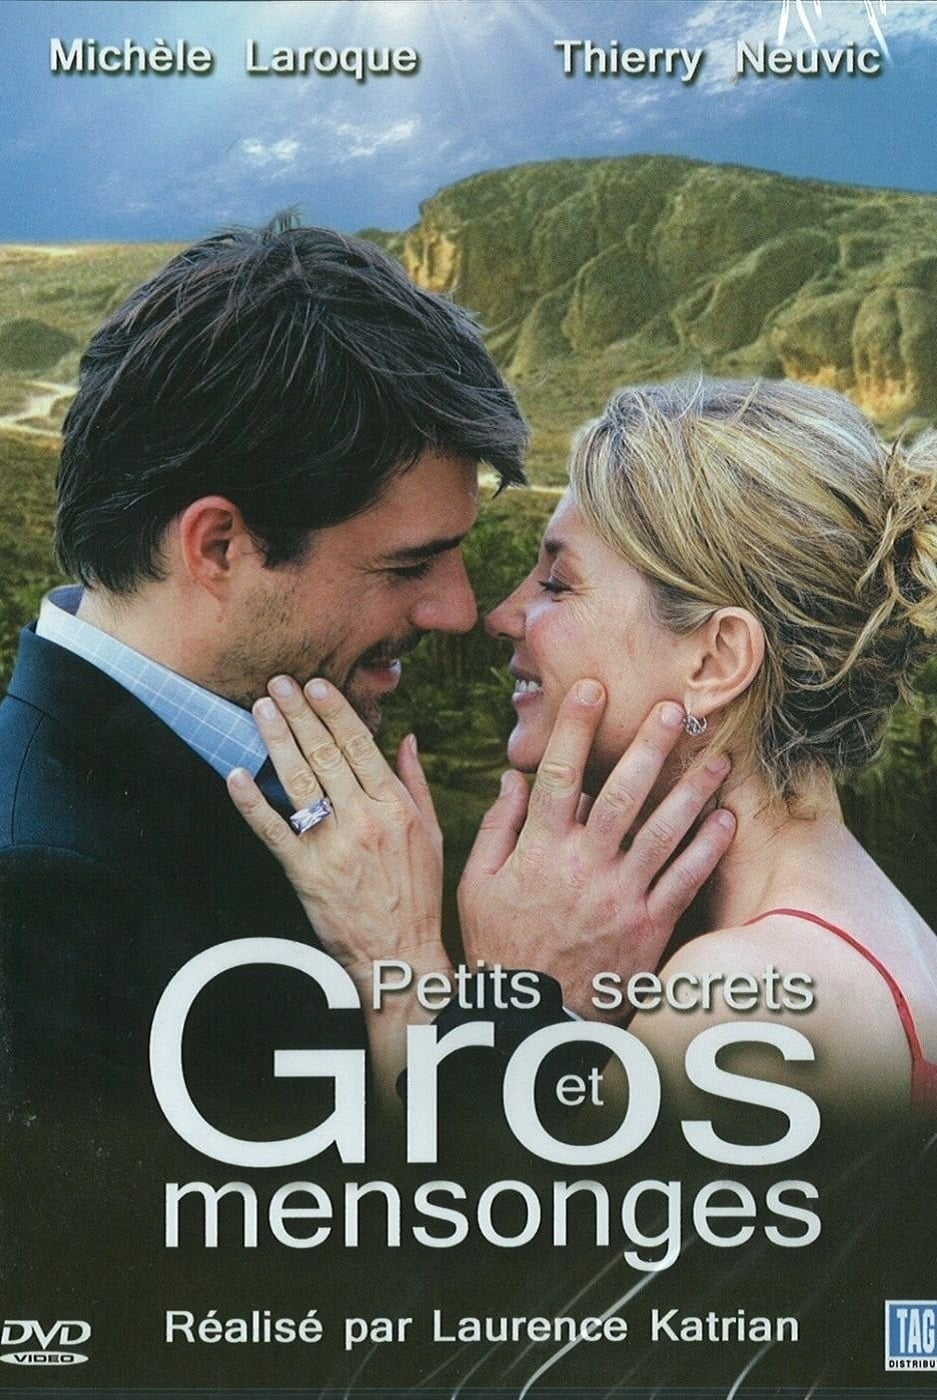 Petits secrets et gros mensonges (2007)